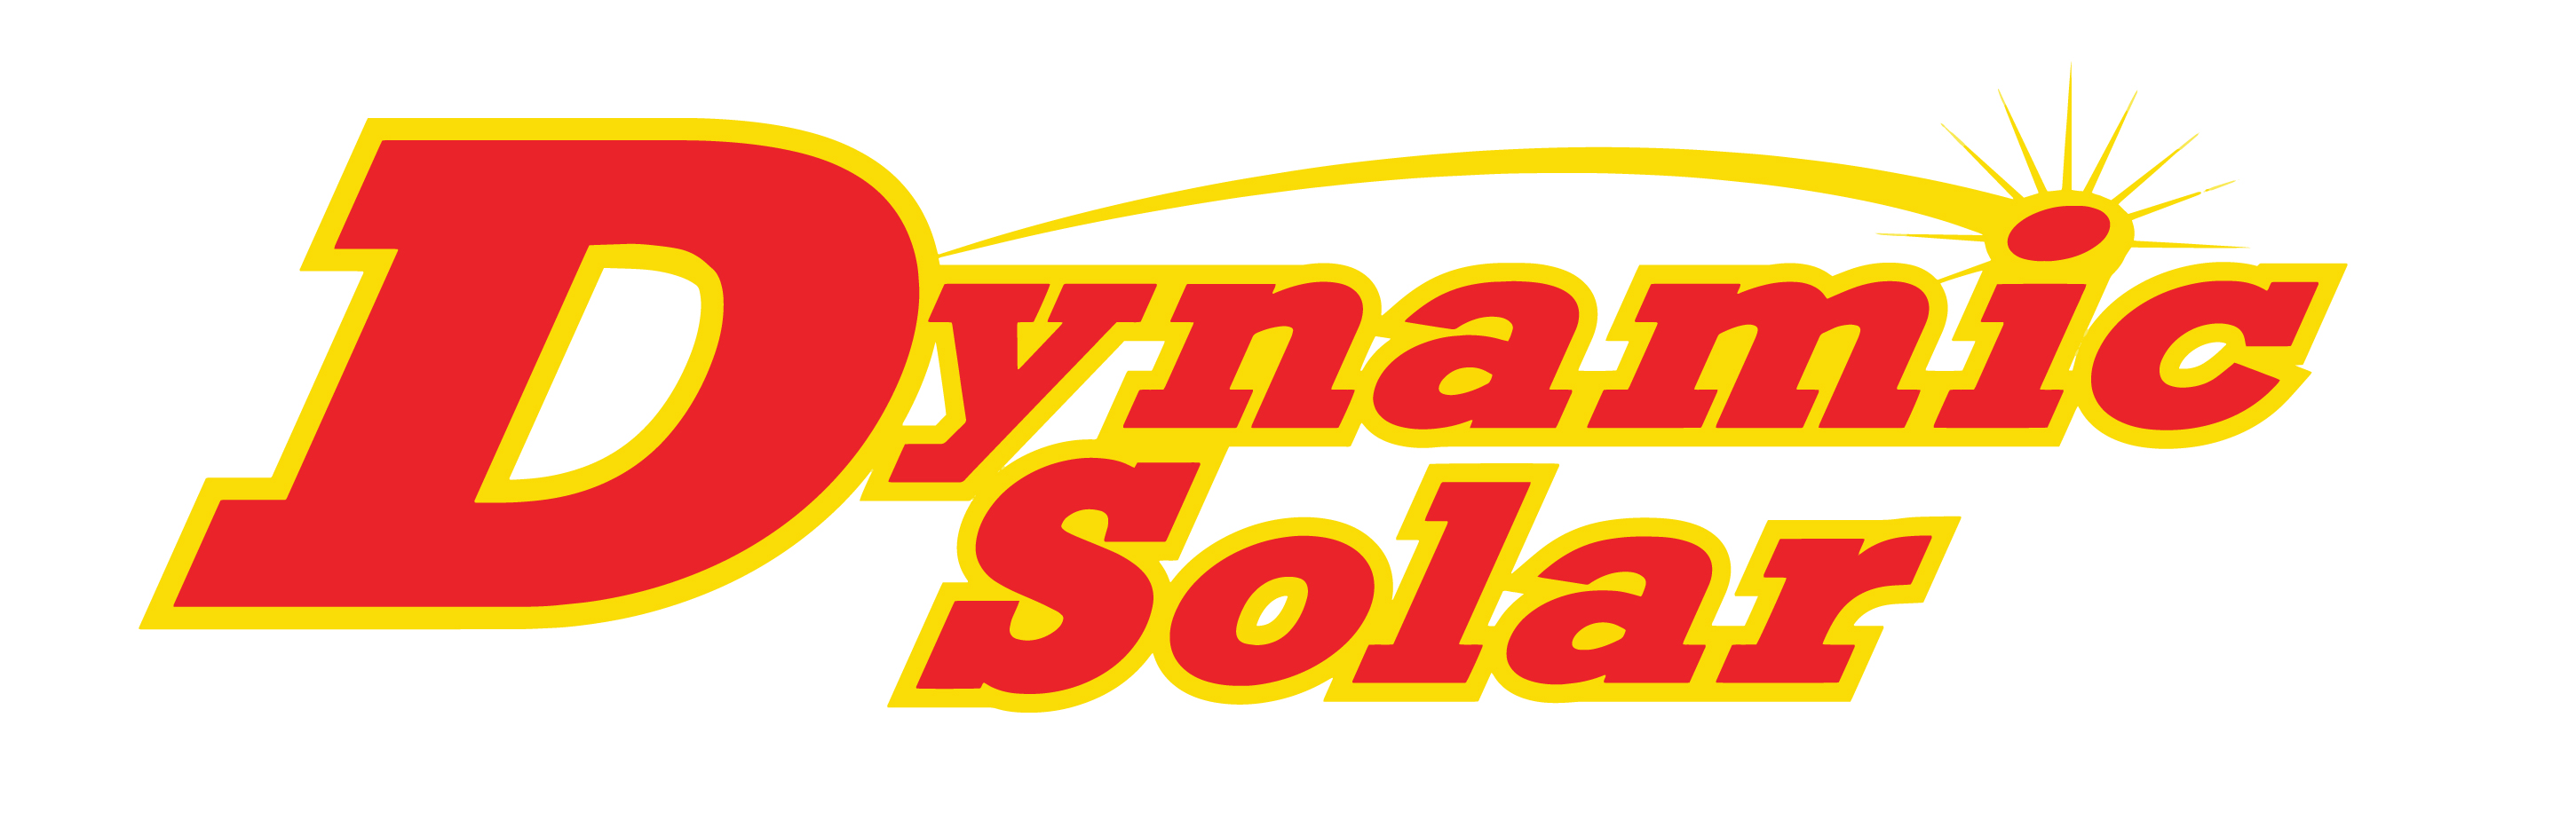 Dynamic Solar